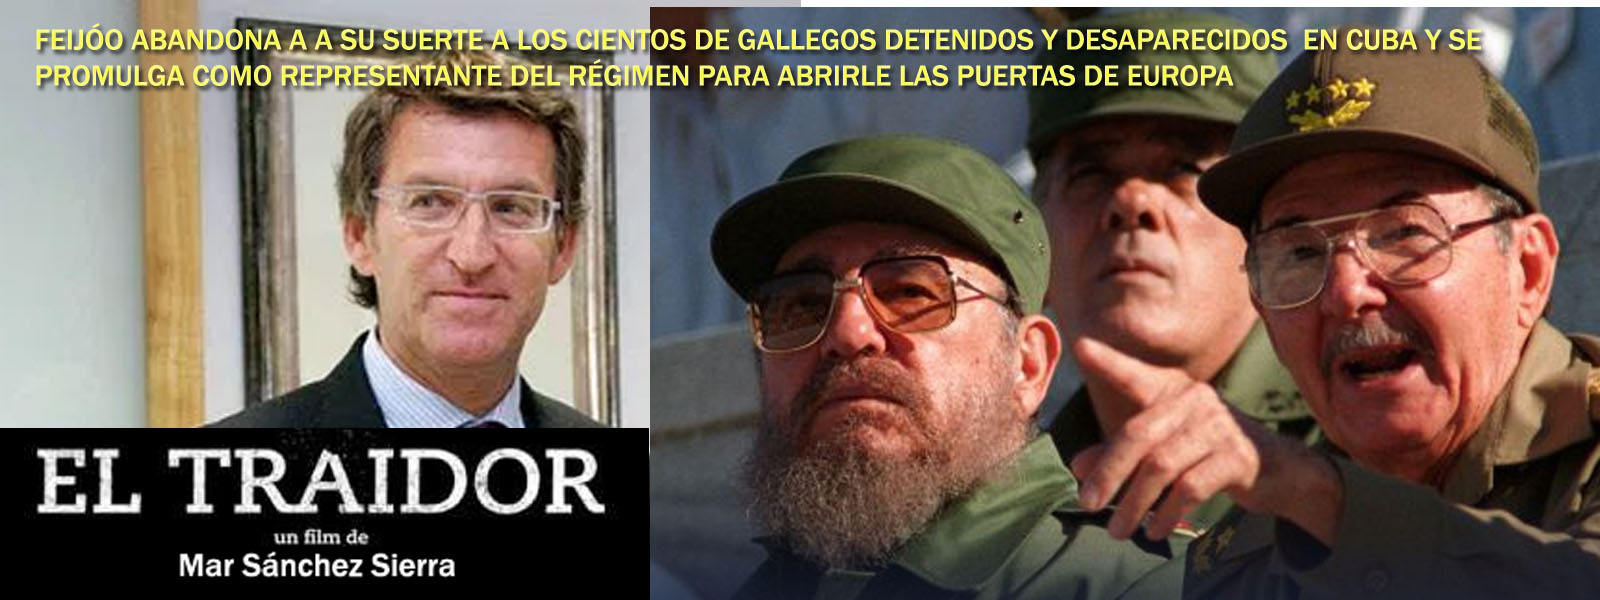 Sr Feijóo denuncian que sus amigos castristas de Cuba estan &quot;torturando&quot; a  decenas de gallegos/as bajo su silencio confabulador... - Xornal Galicia | Xornal  Galicia